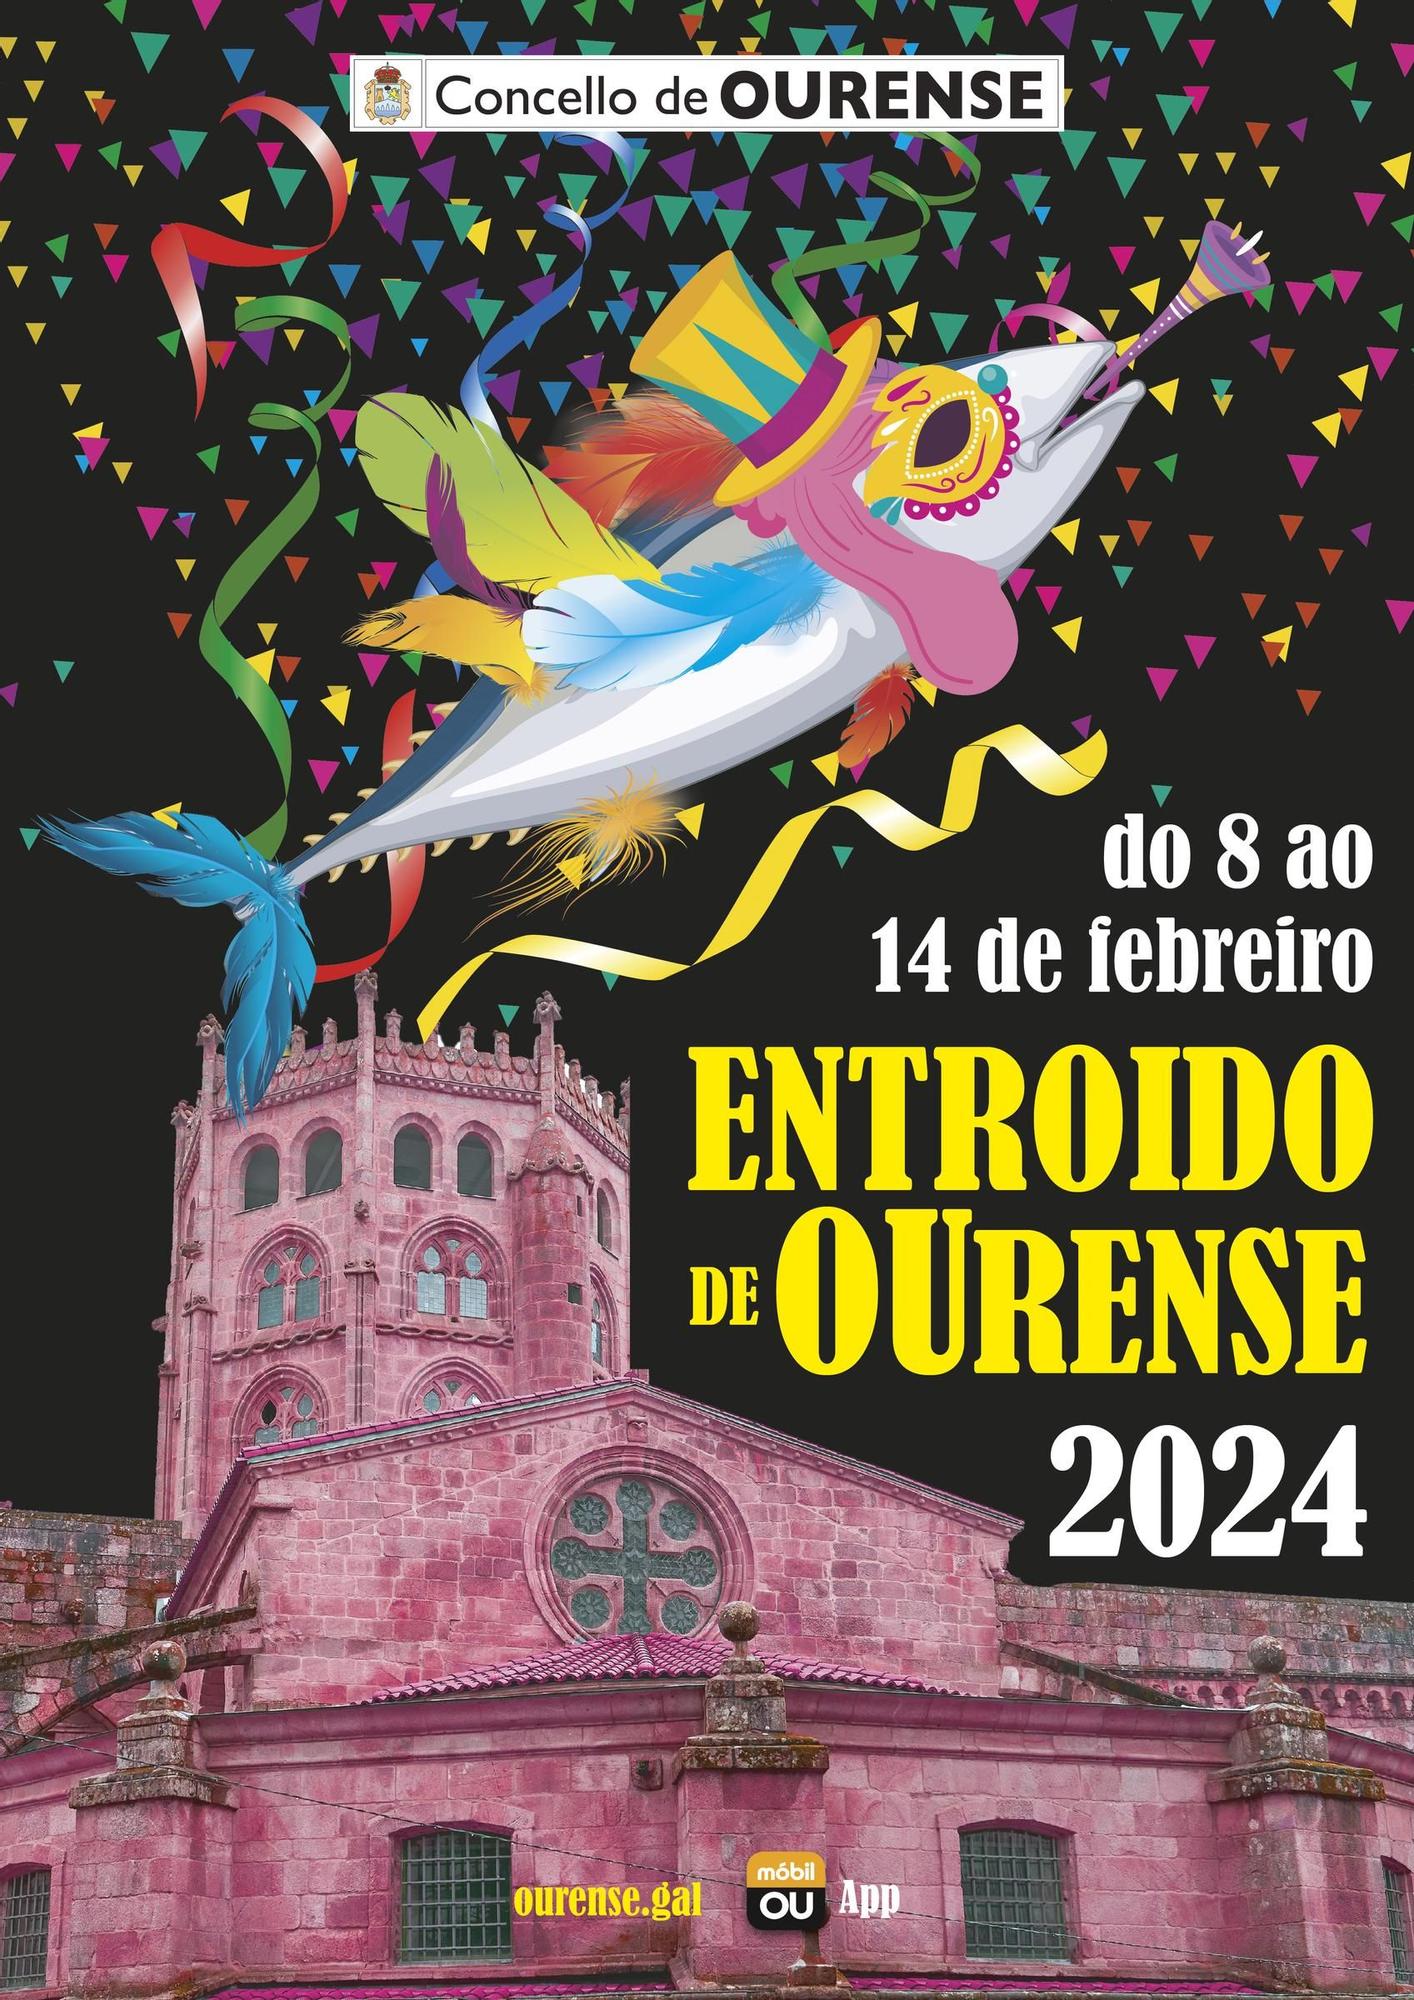 Cartel del Entroido de Ourense 2024.jpg